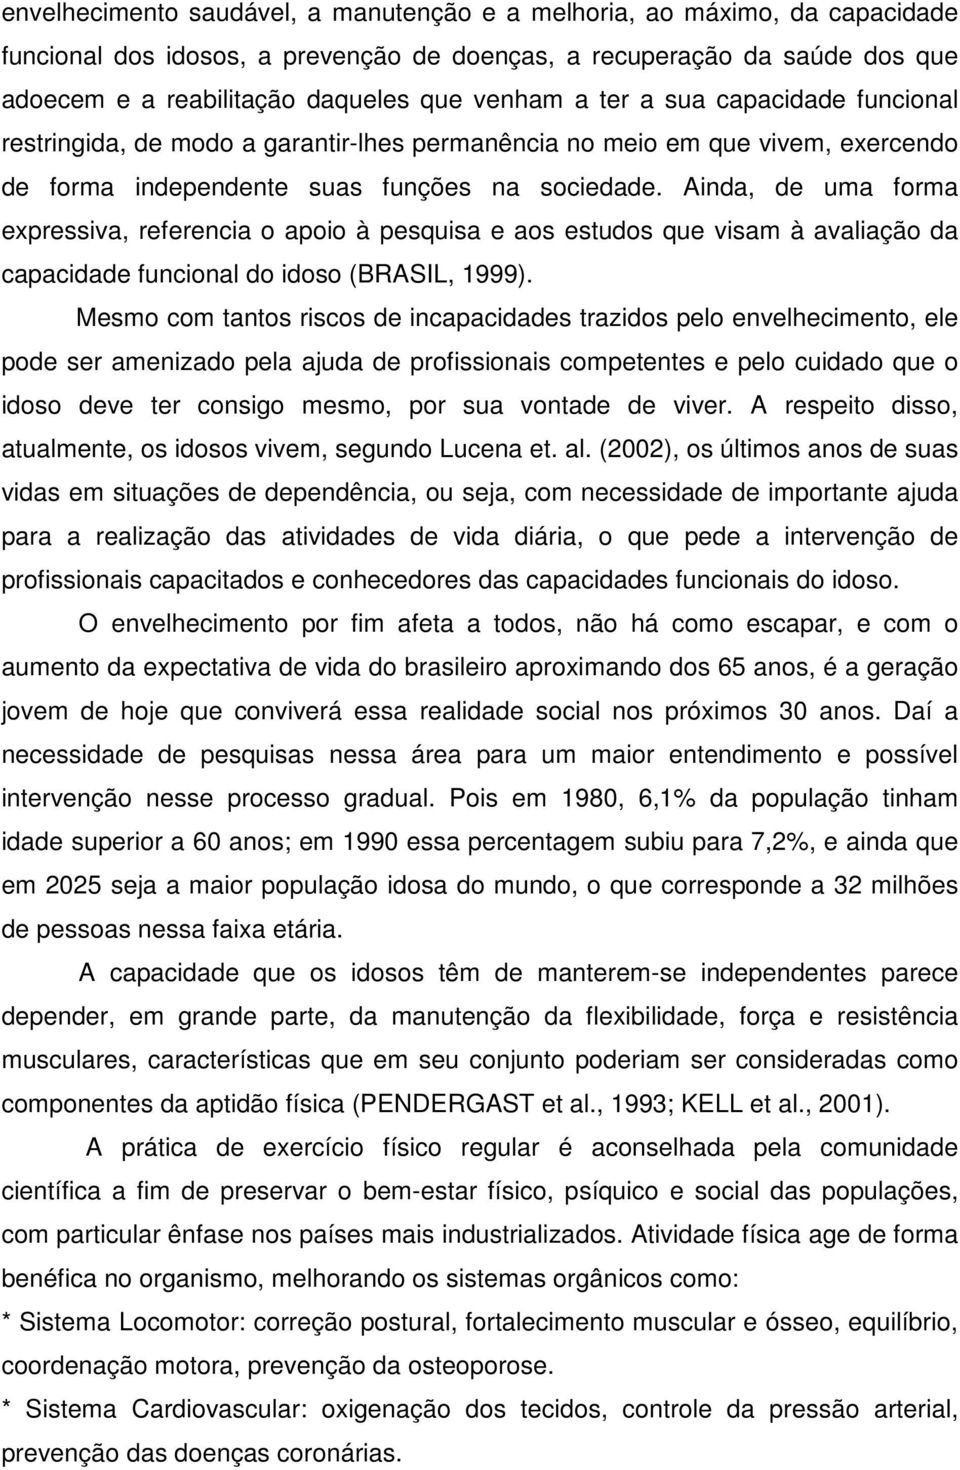 Ainda, de uma forma expressiva, referencia o apoio à pesquisa e aos estudos que visam à avaliação da capacidade funcional do idoso (BRASIL, 1999).